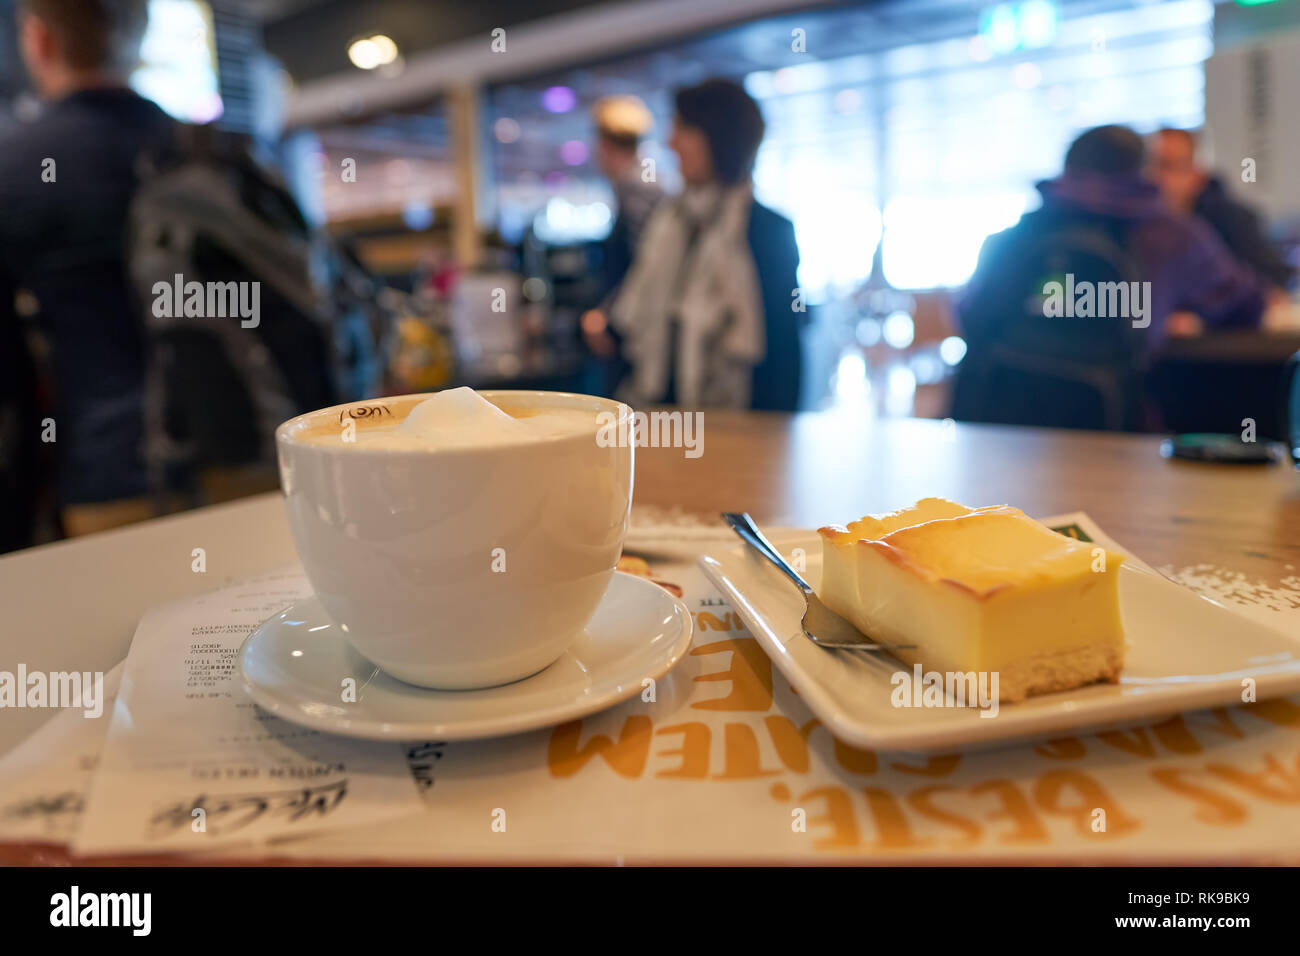 FRANKFURT, Deutschland - 13 März 2016: Tasse Kaffee und Dessert im McCafe.  McCafe ist ein Kaffee - Haus - Essen und Trinken Kette, die von McDonald's  im Besitz Stockfotografie - Alamy